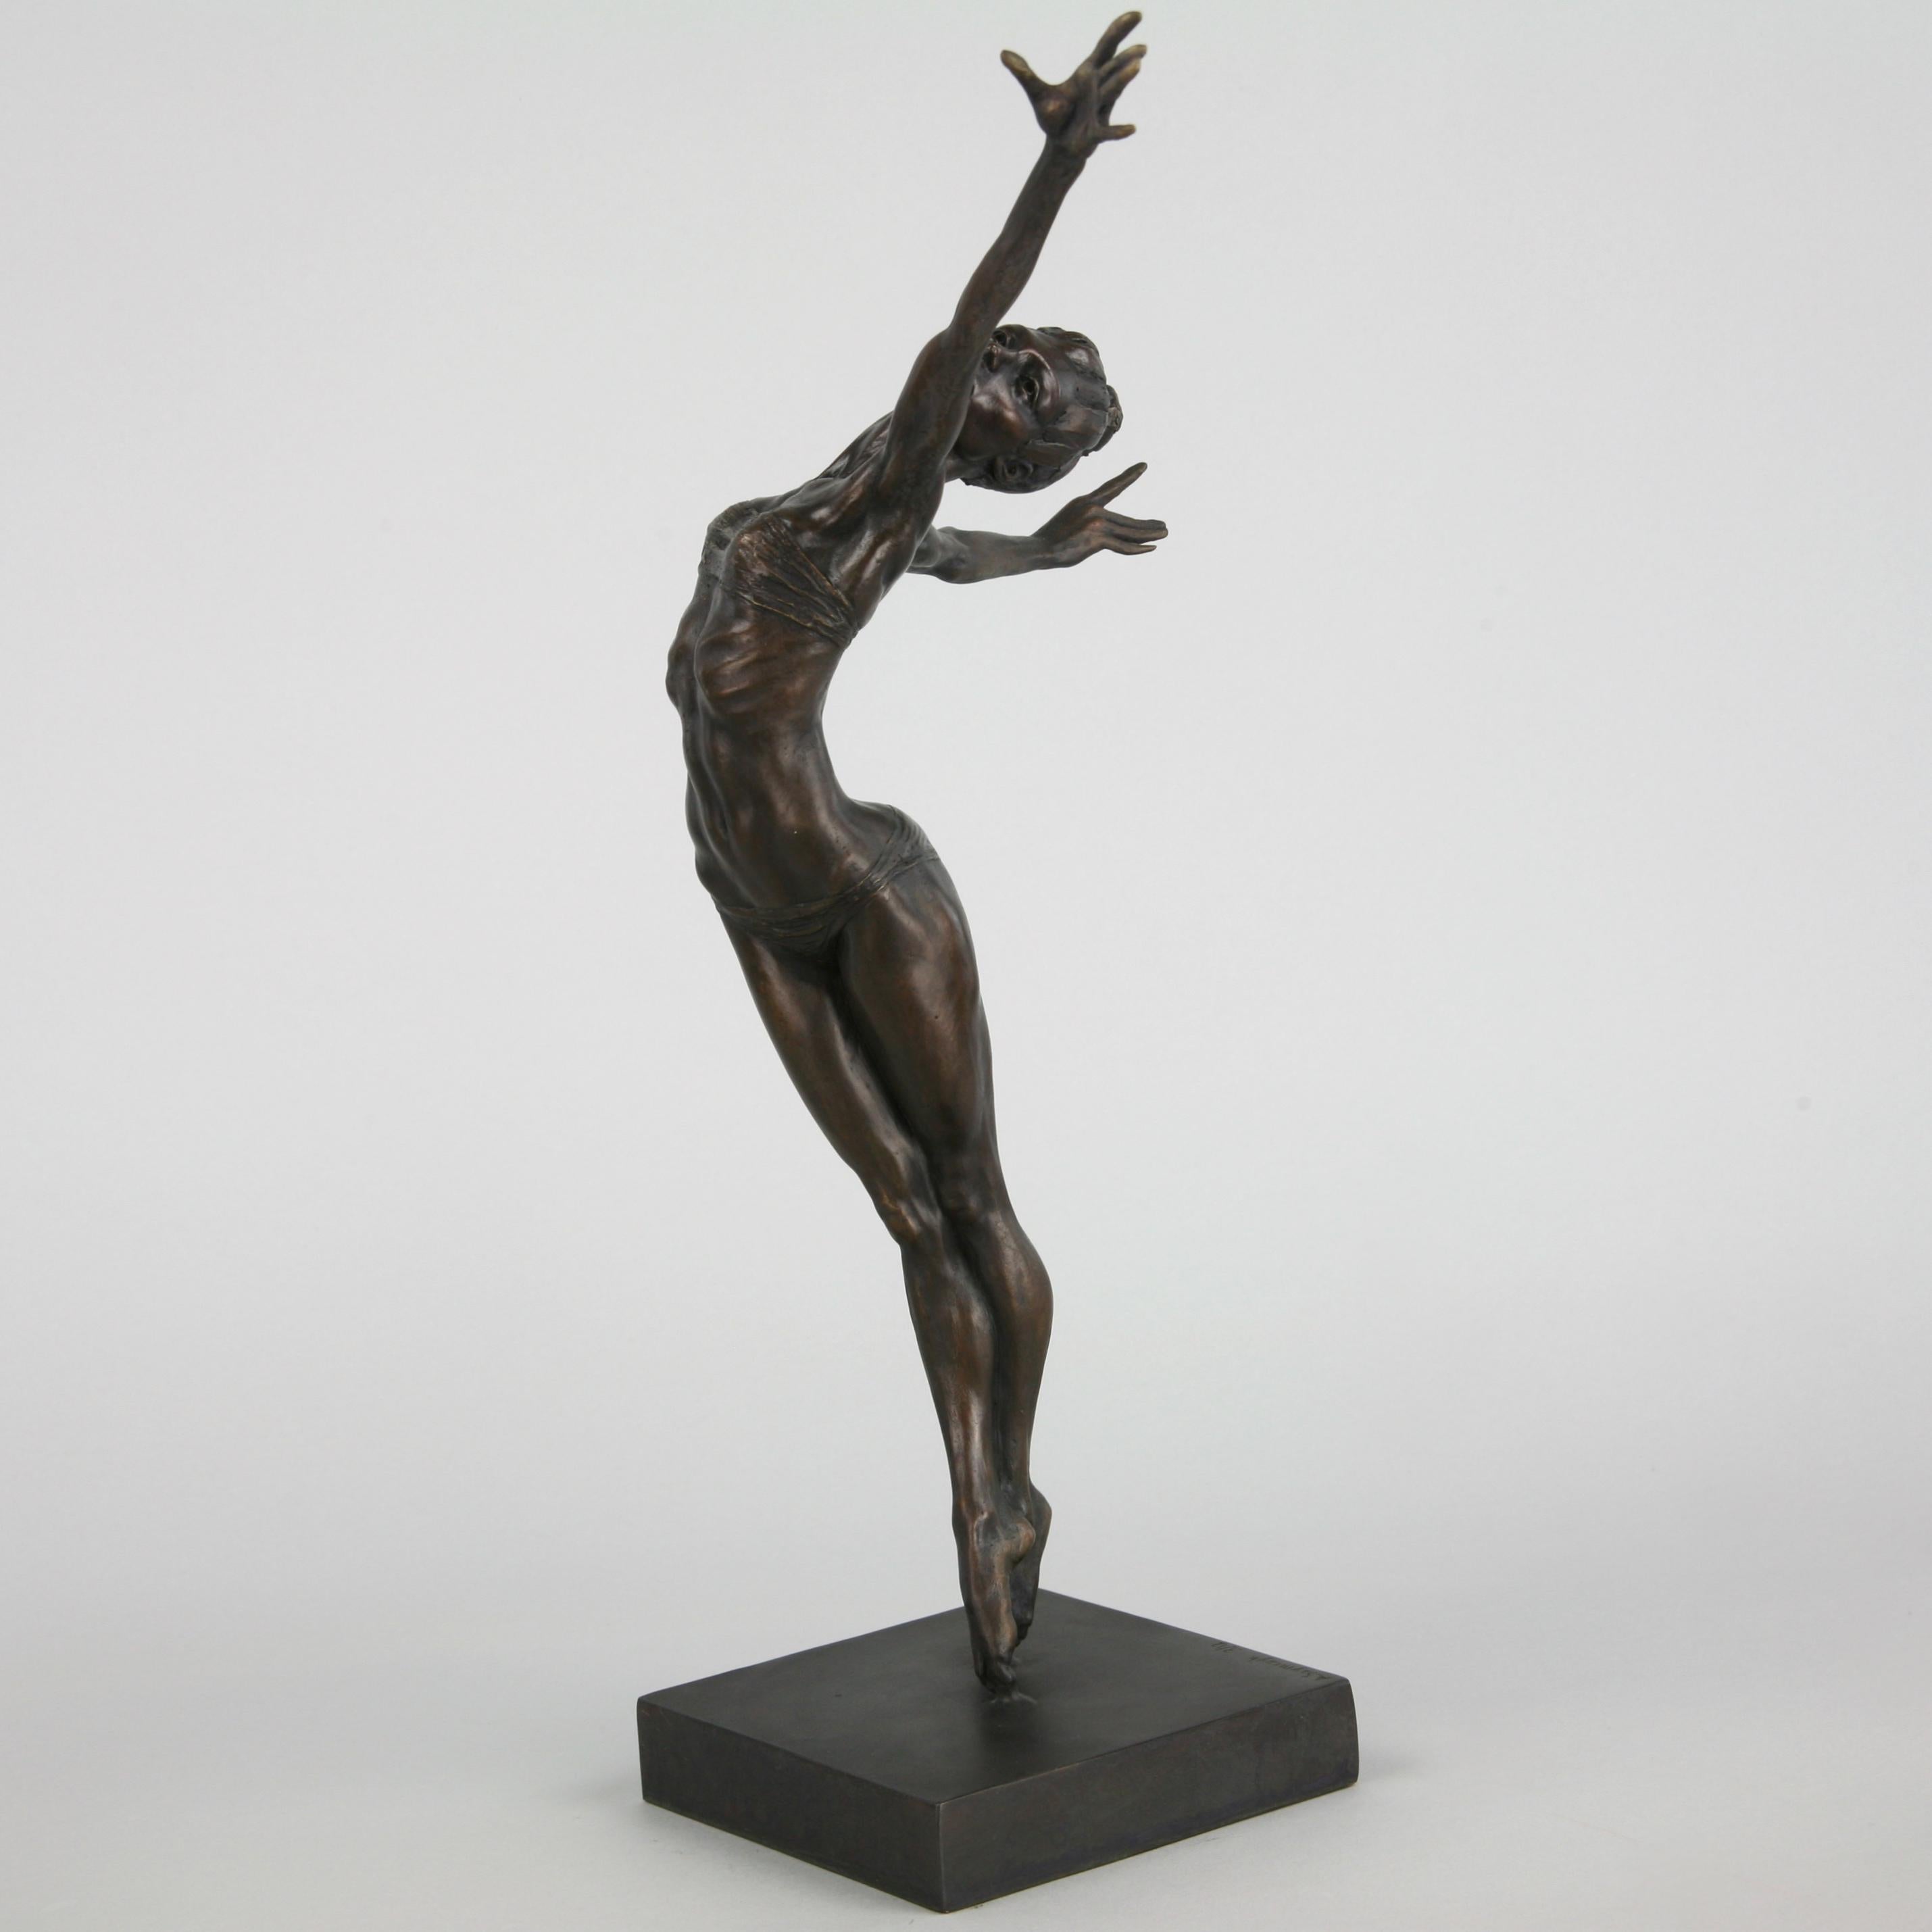 Pole Dancer-original nude figurative bronze sculpture-artwork-contemporary Art For Sale 4